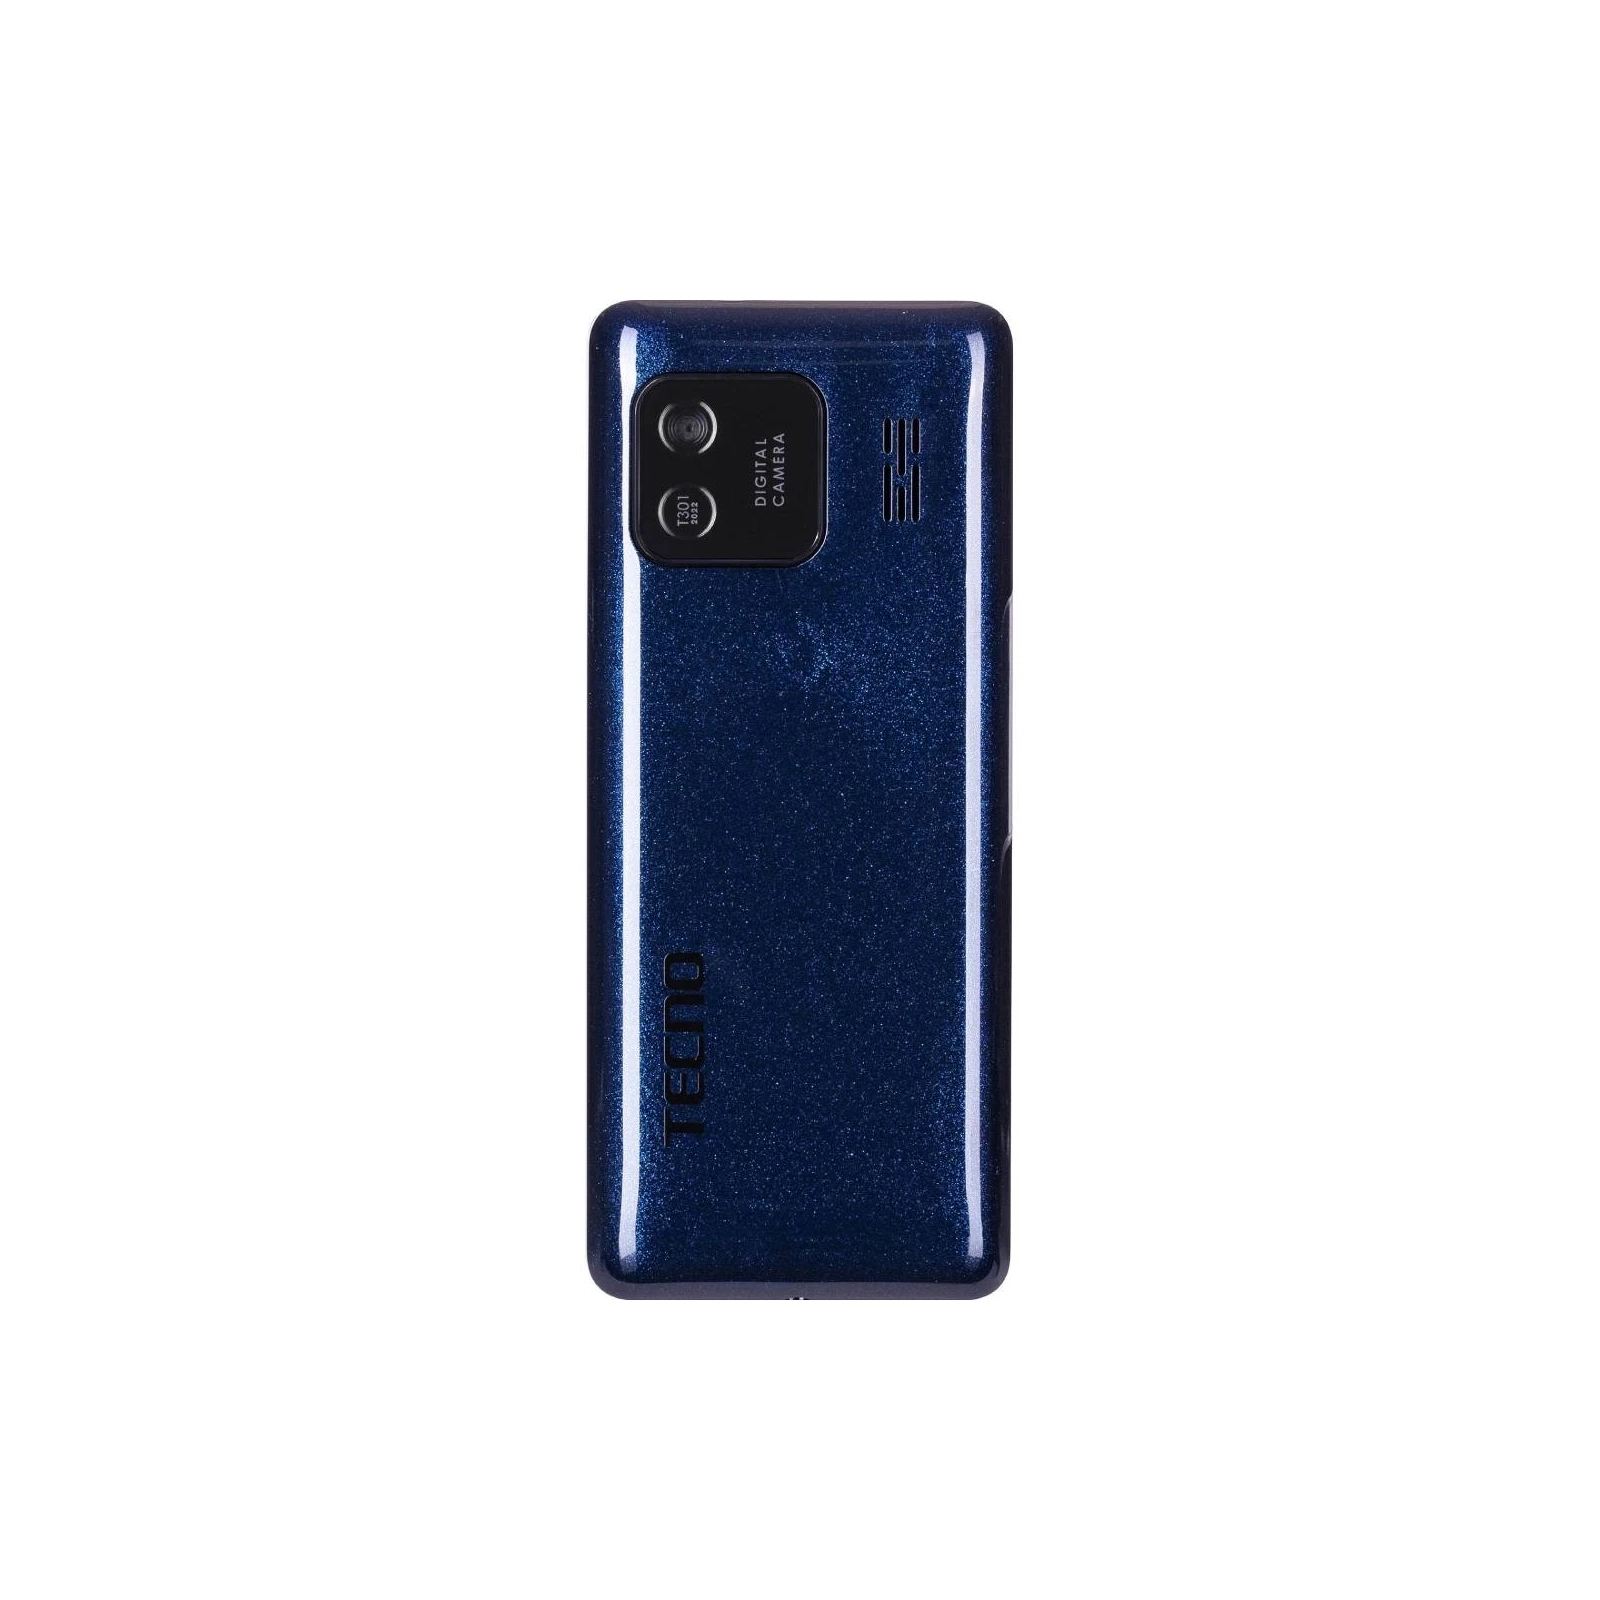 Мобильный телефон Tecno T301 Blue (4895180778698) изображение 2